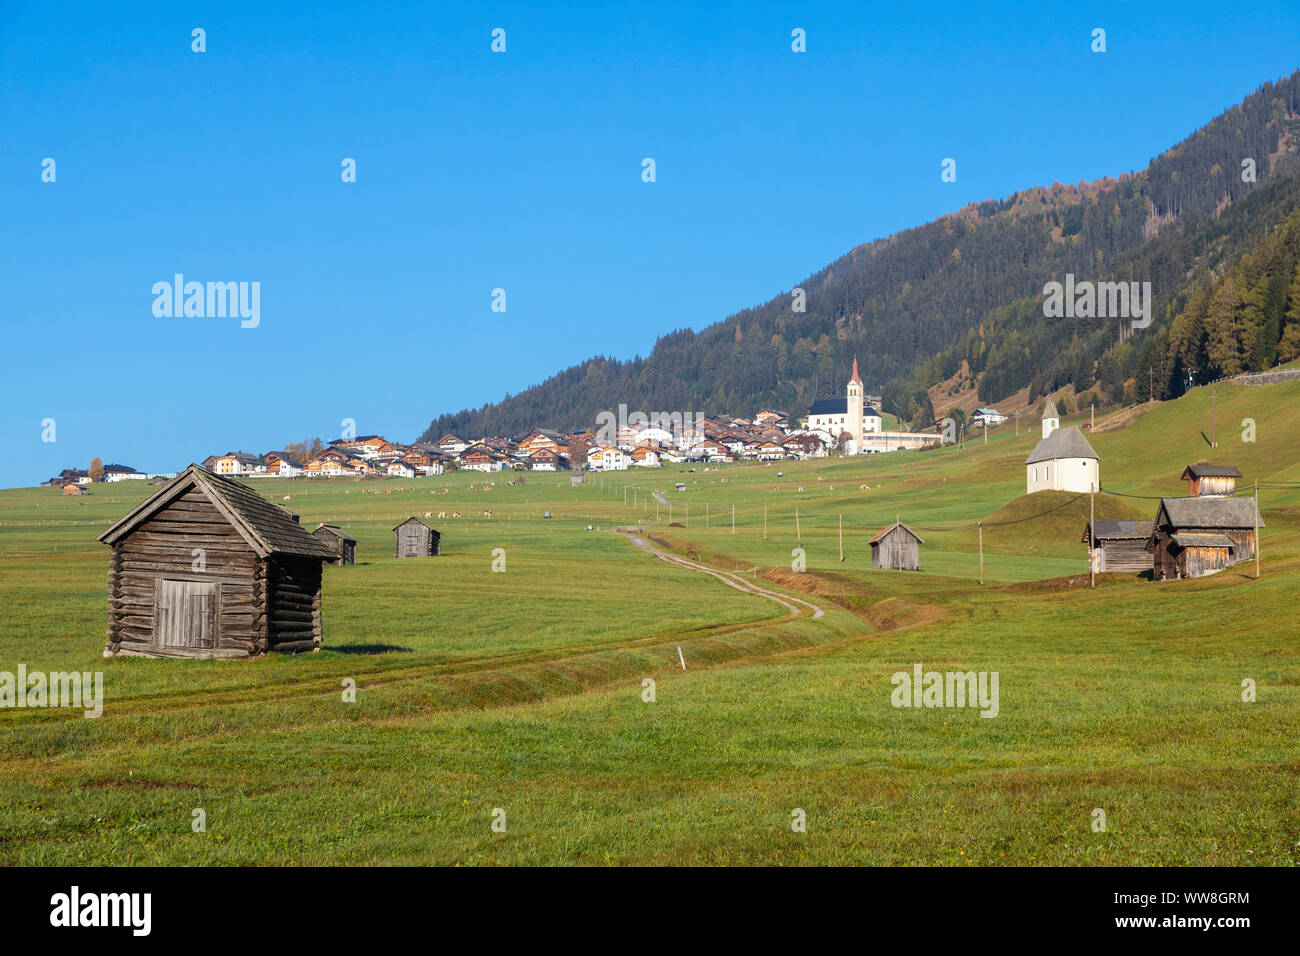 The St Helena chapel Obertilliach village, Tiroler Gailtal, East Tyrol, Tyrol, Austria Stock Photo